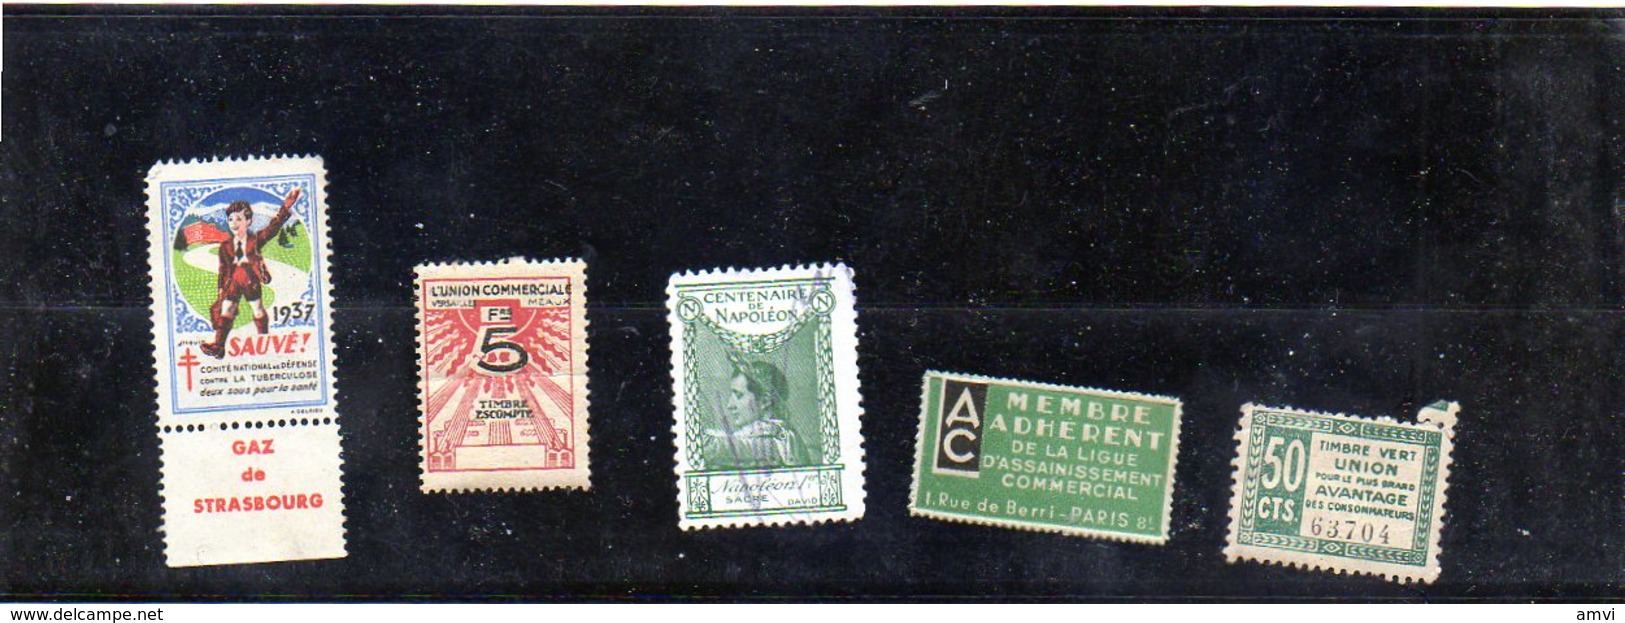 3876 - 5 Vignettes Tuberculose  1937  - Ligue Assainissement - Union Commerciale Plié Centenaire Napoleon Timbre Vert - Fantasy Labels